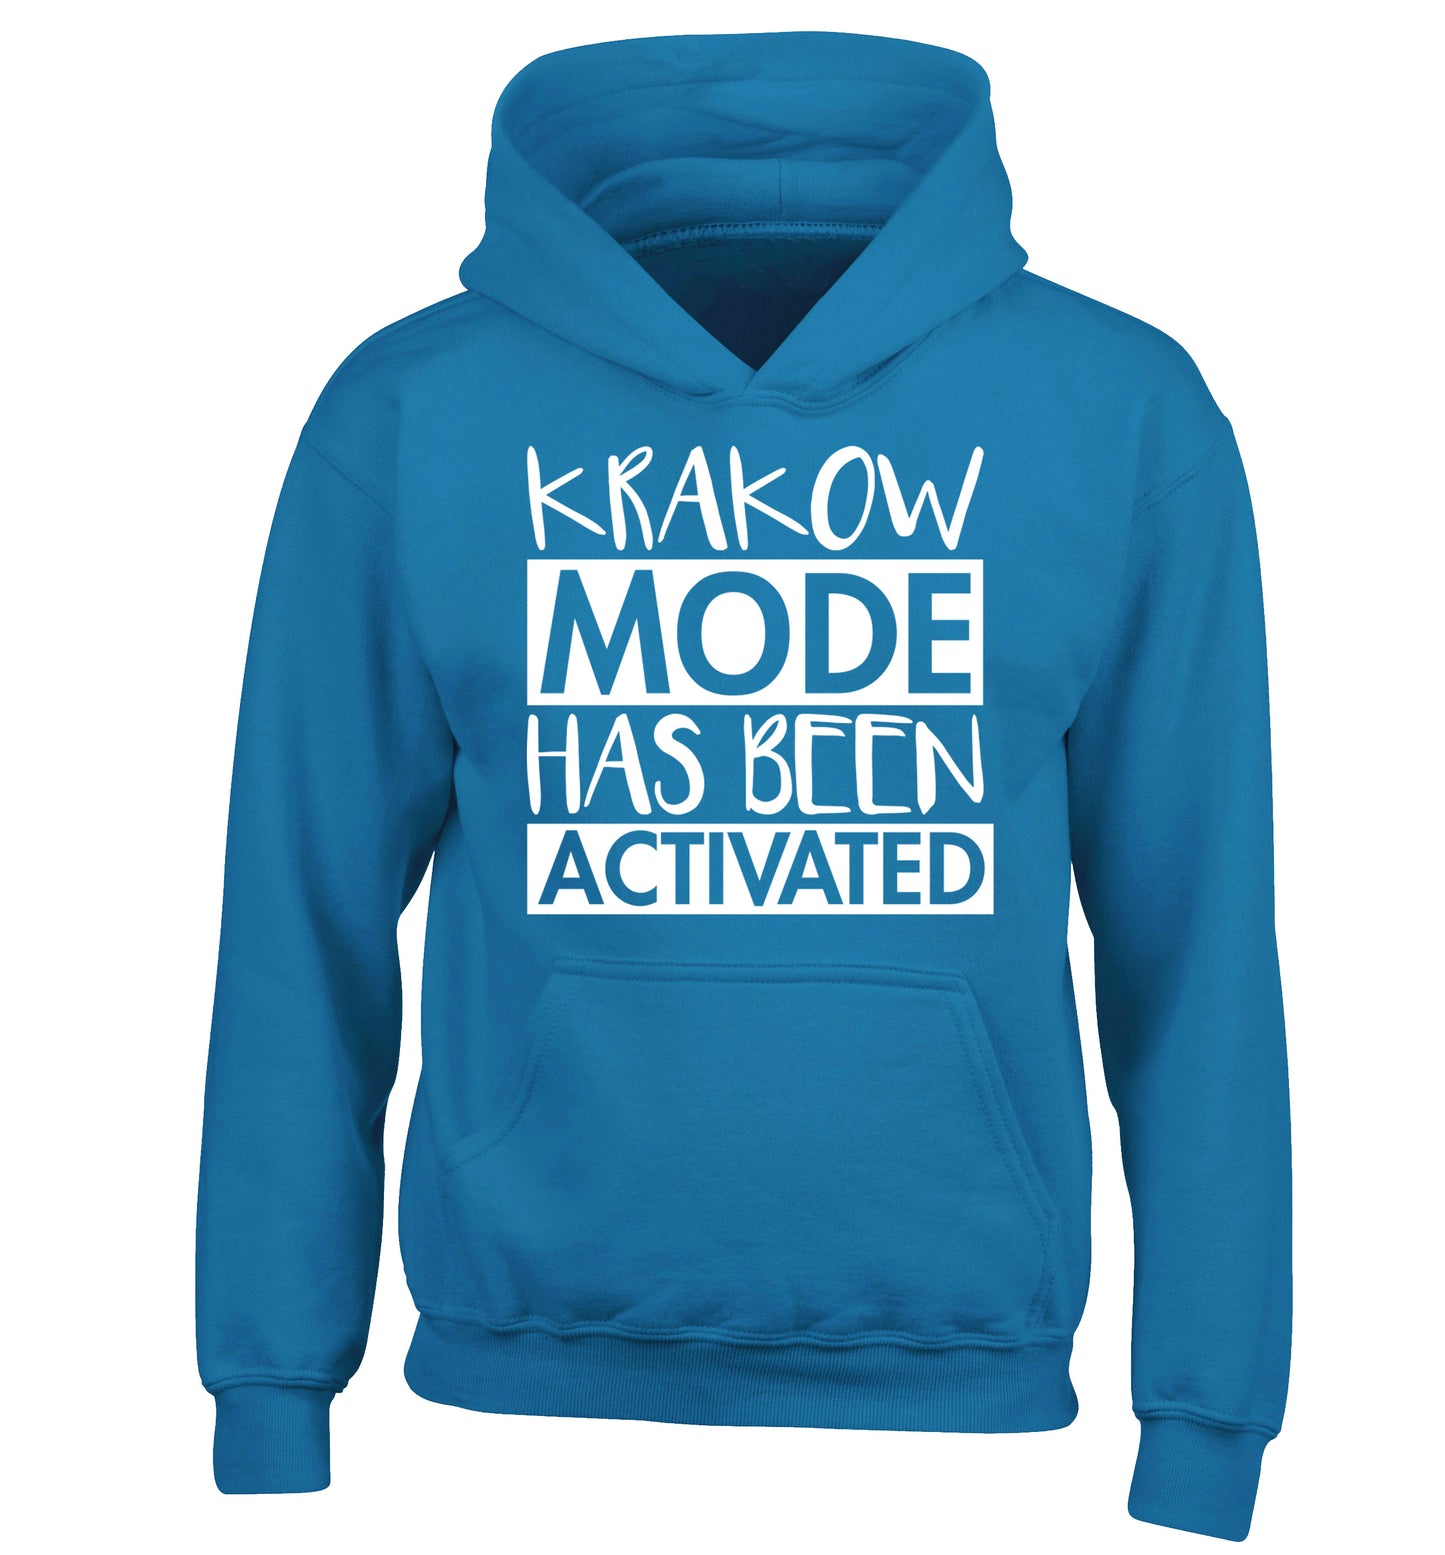 Krakow mode has been activated children's blue hoodie 12-13 Years